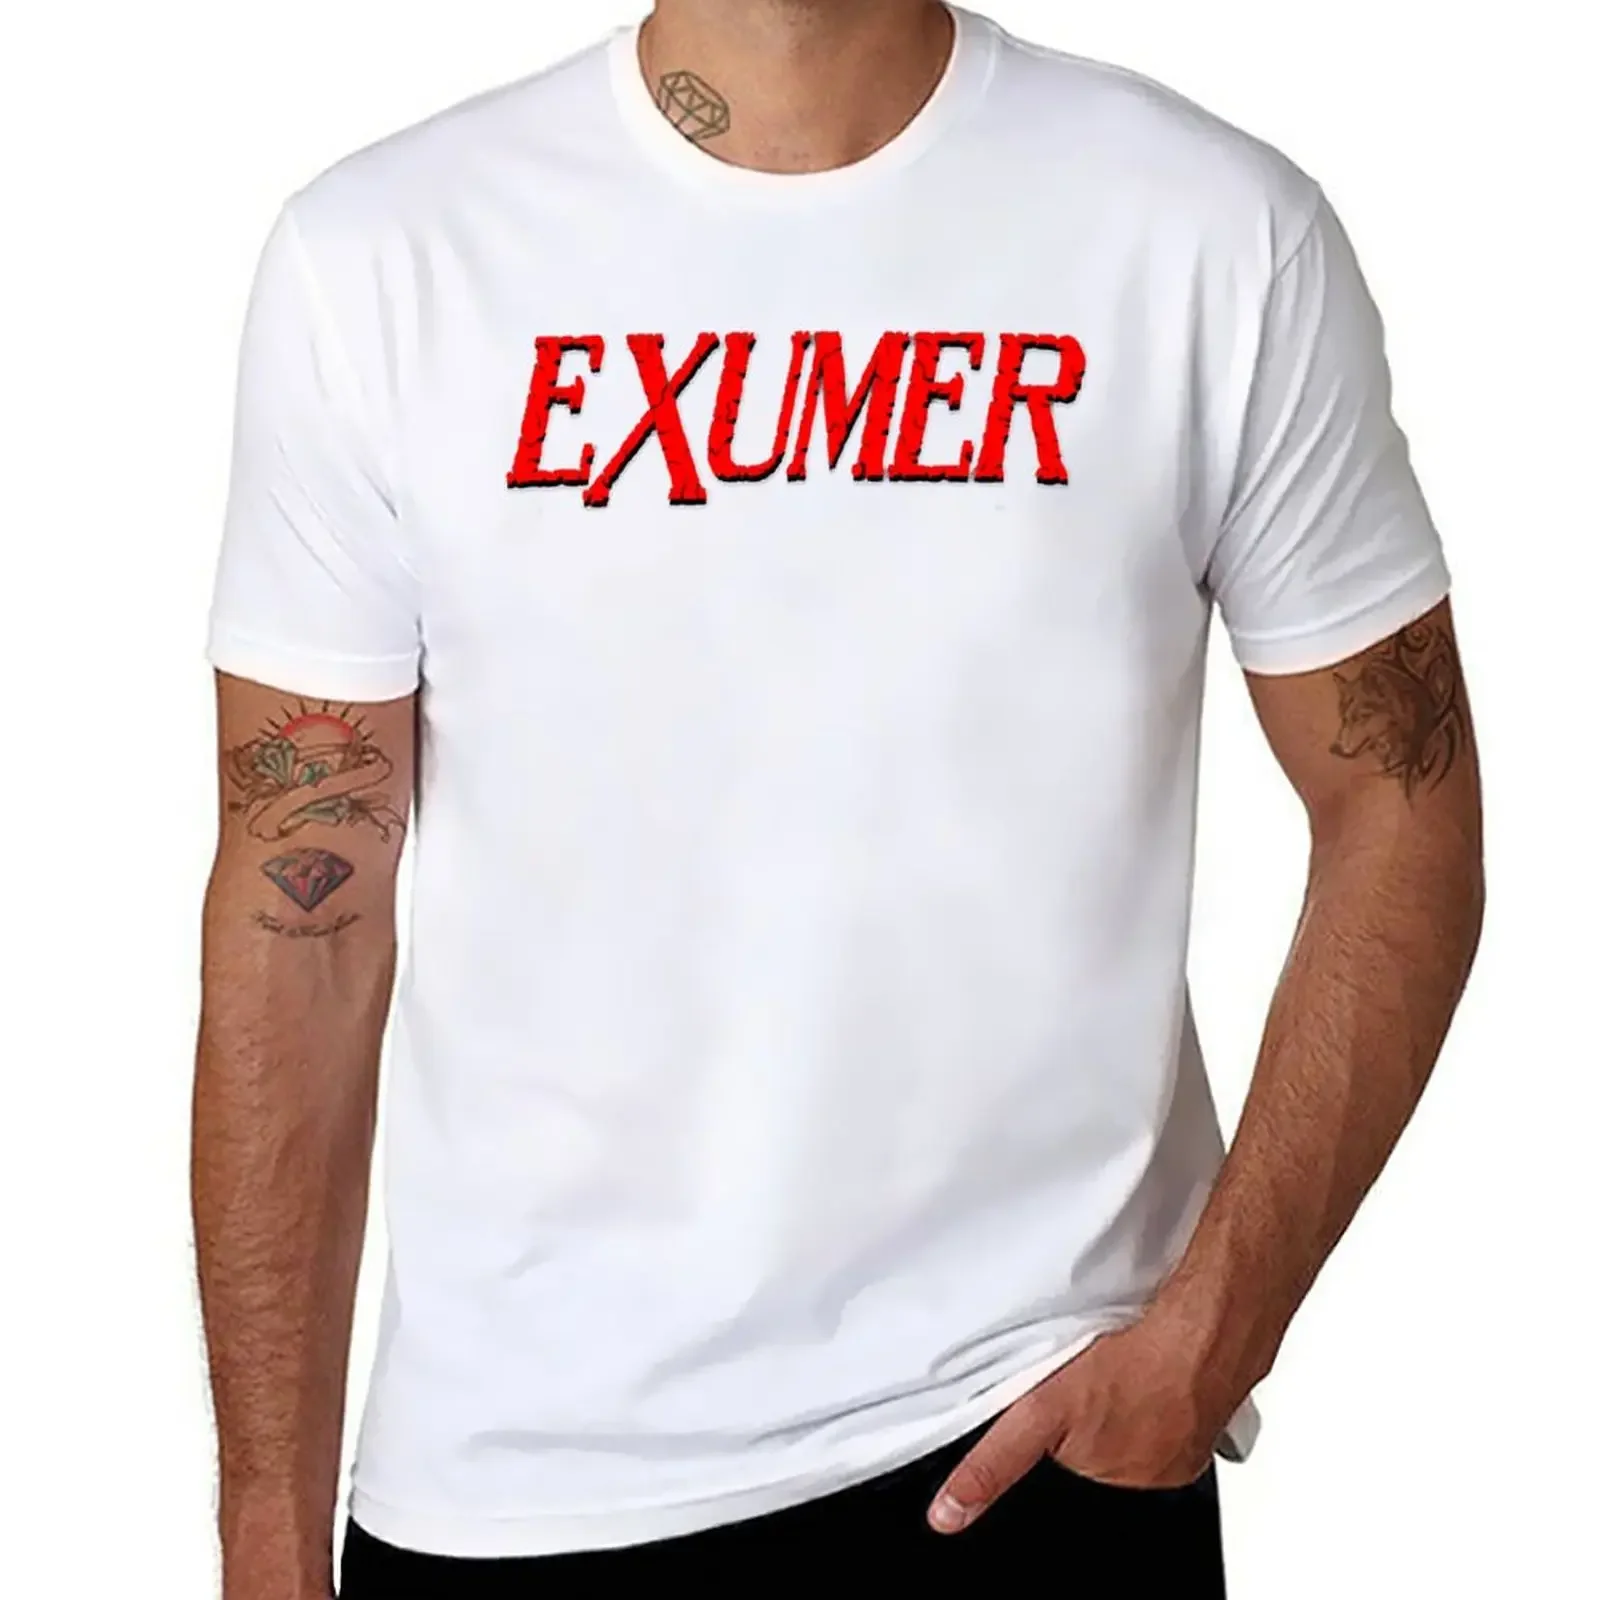 Футболка Exumer Band с логотипом животного для мальчиков заготовки мужской одежды